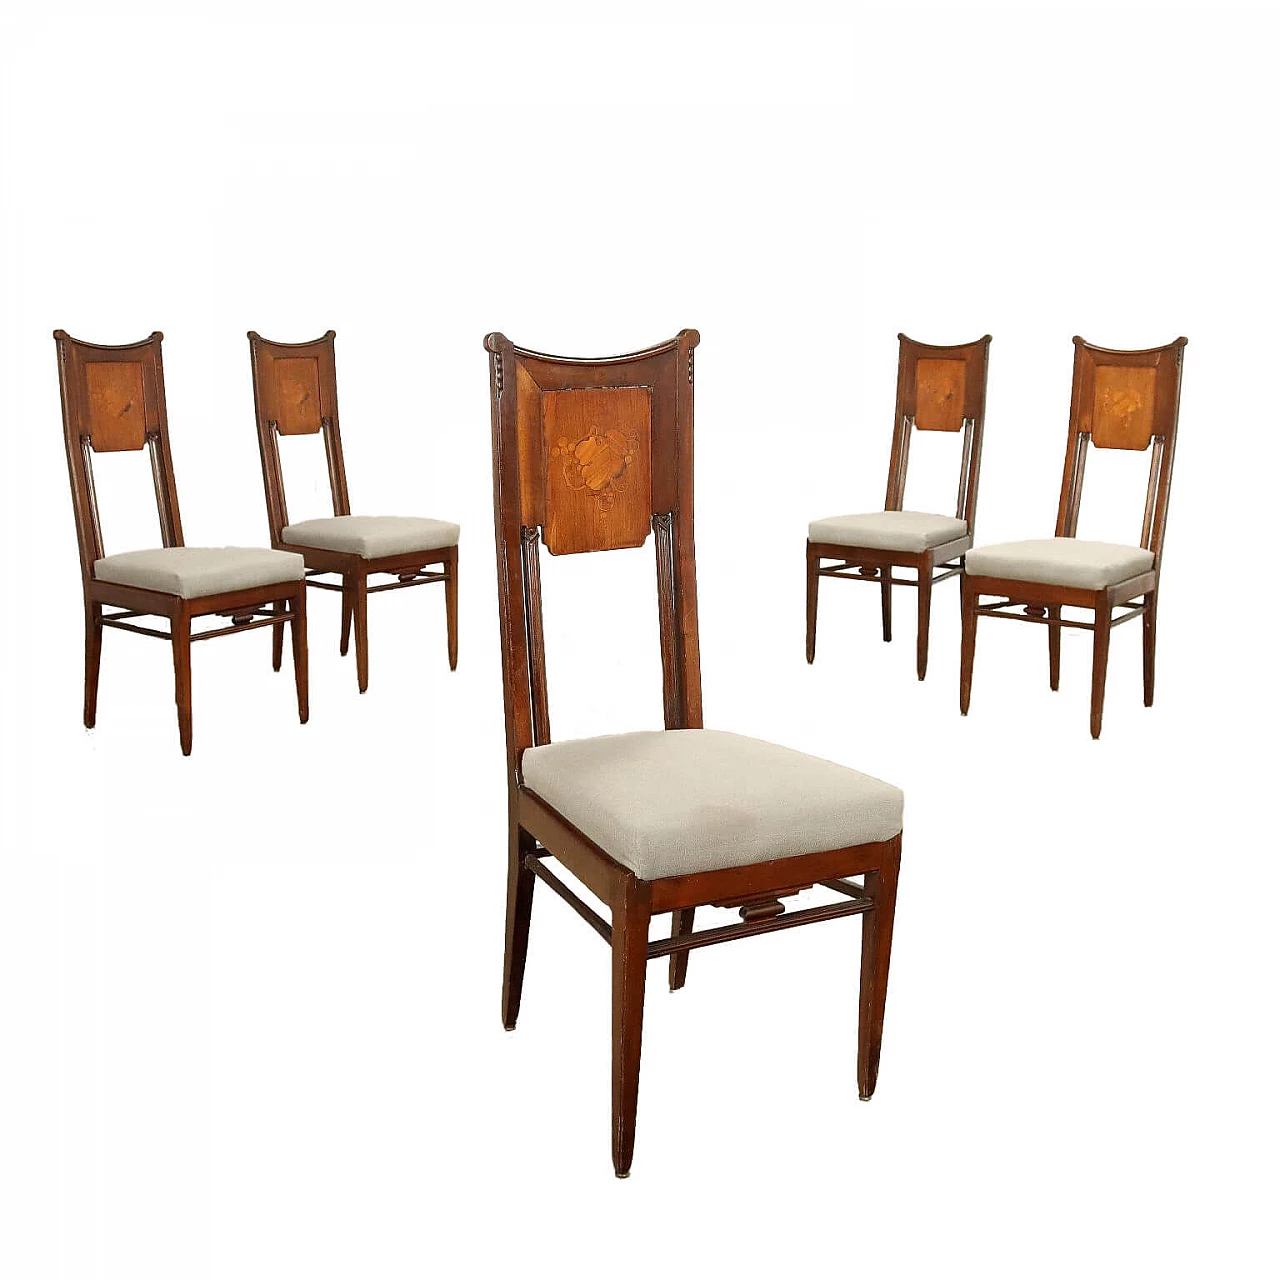 5 Liberty mahogany chairs, early 20th century 1